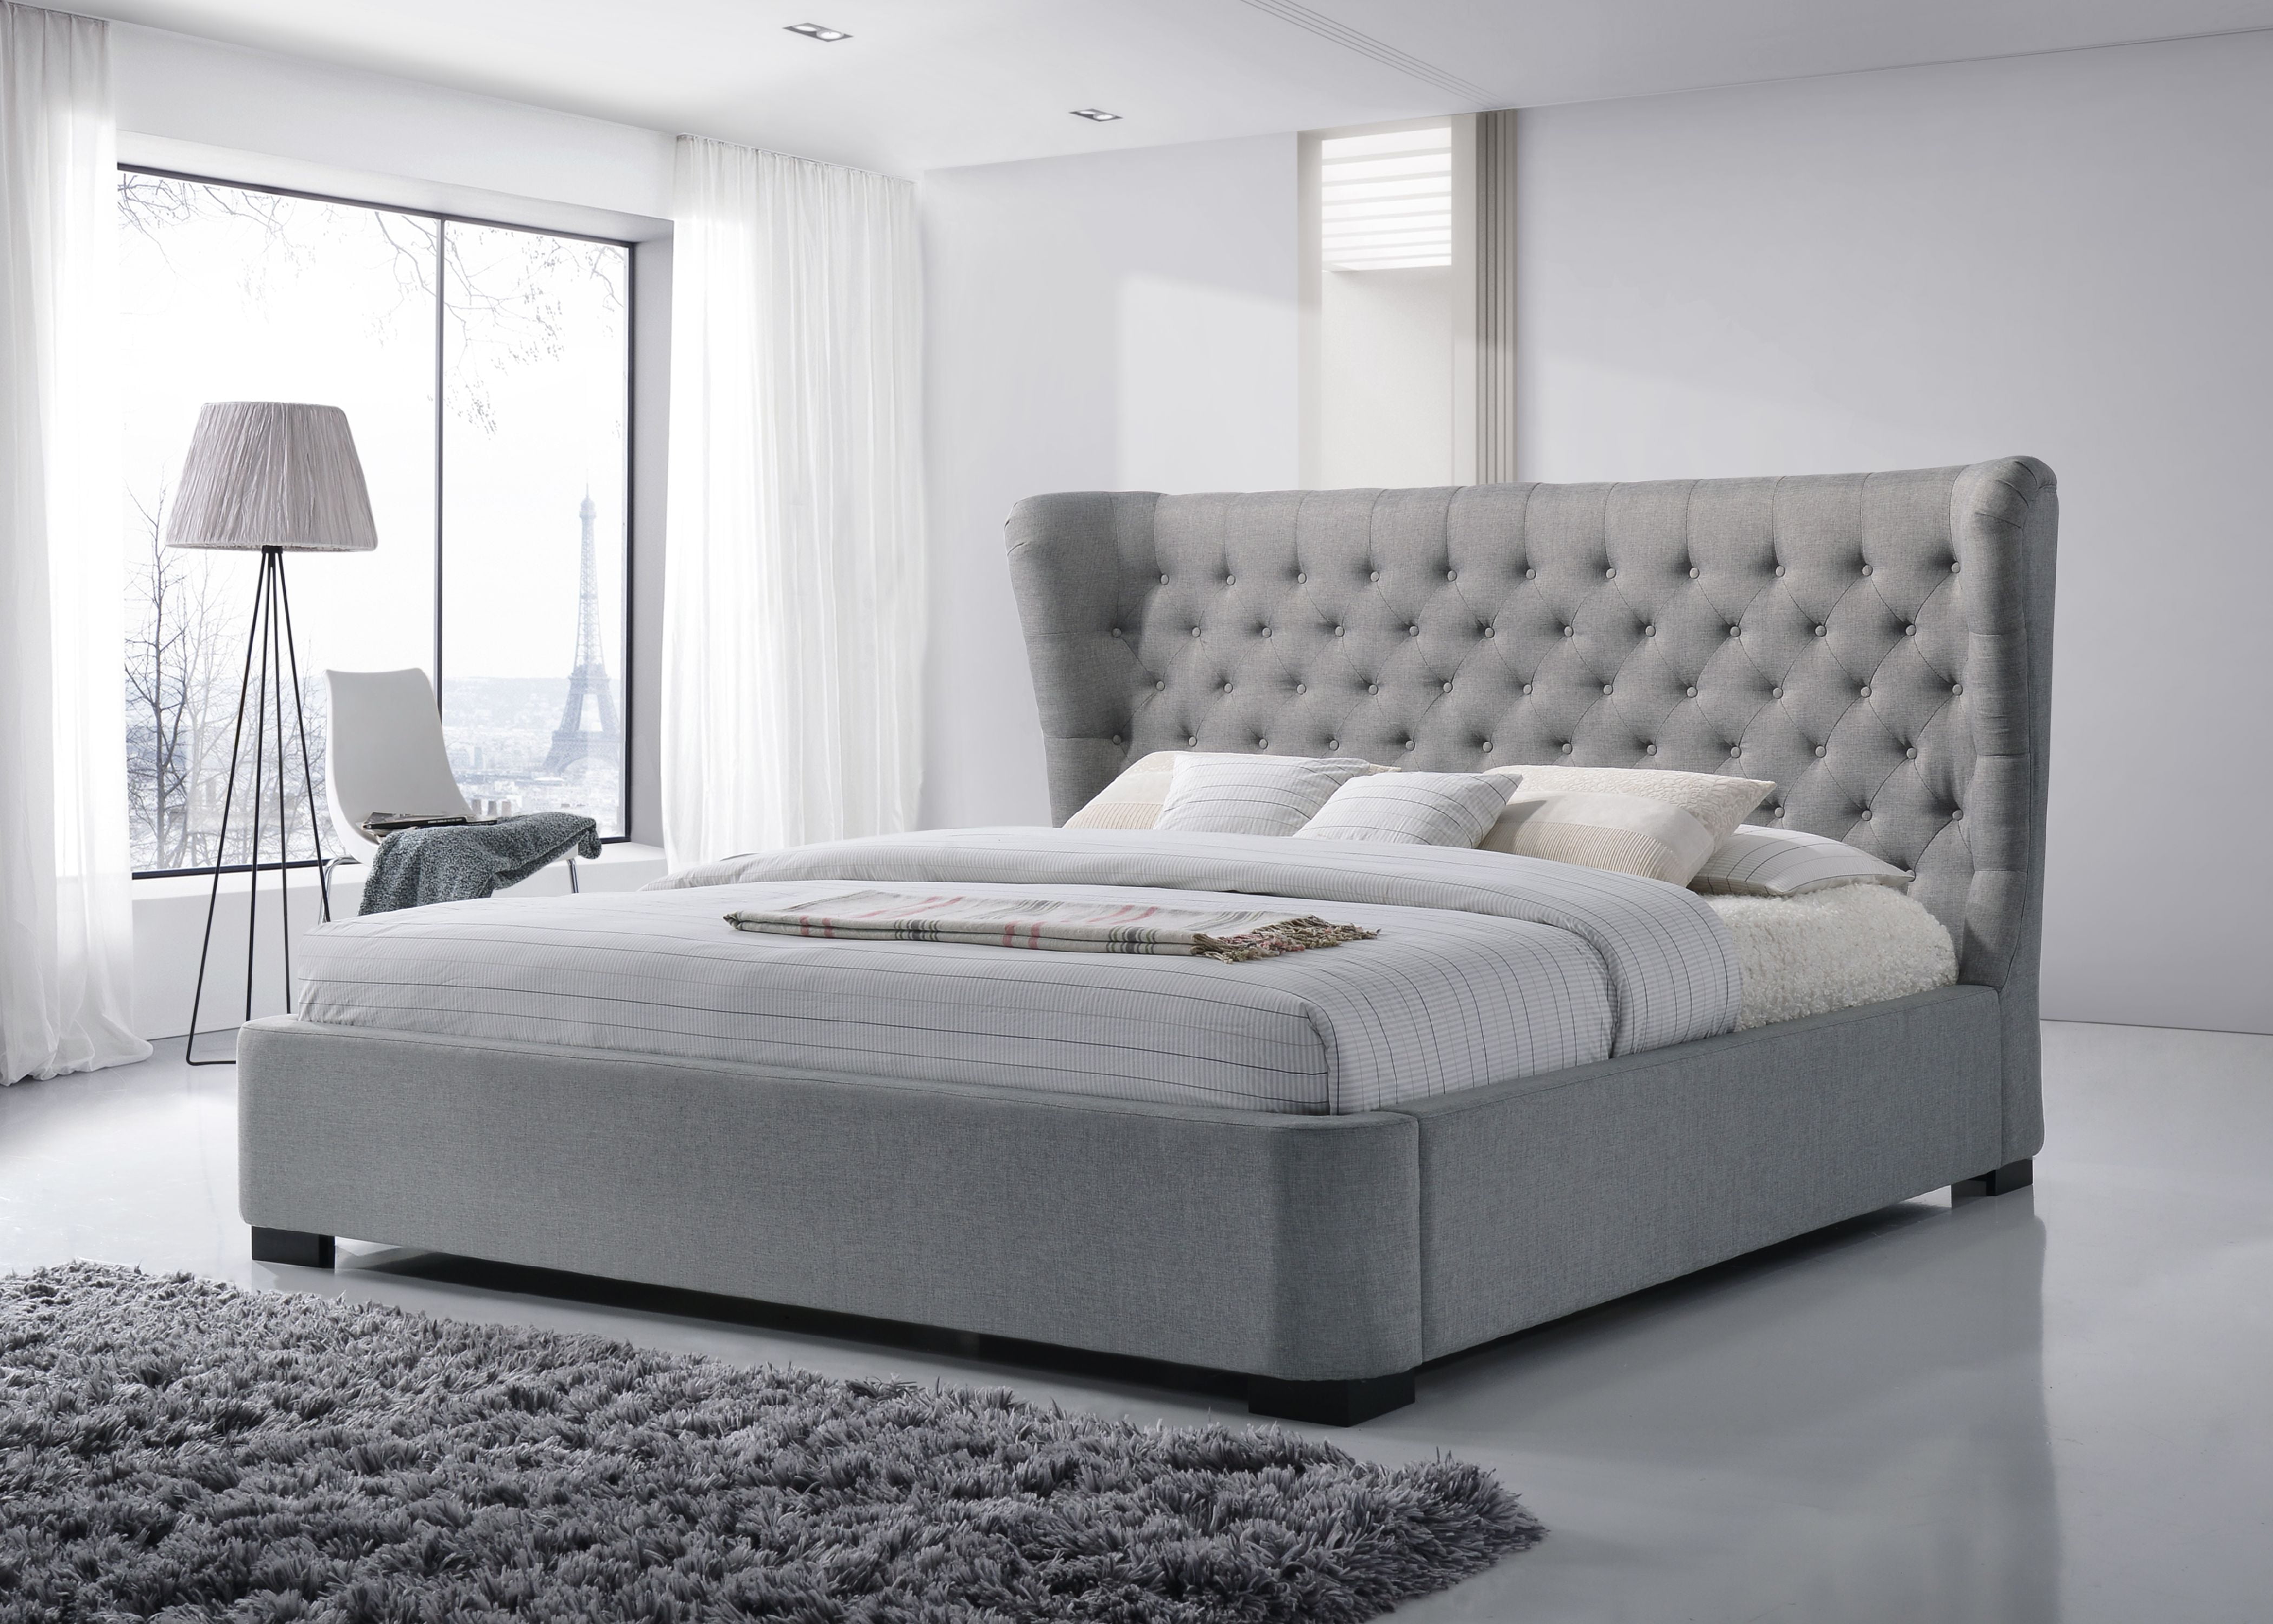 Grey bed